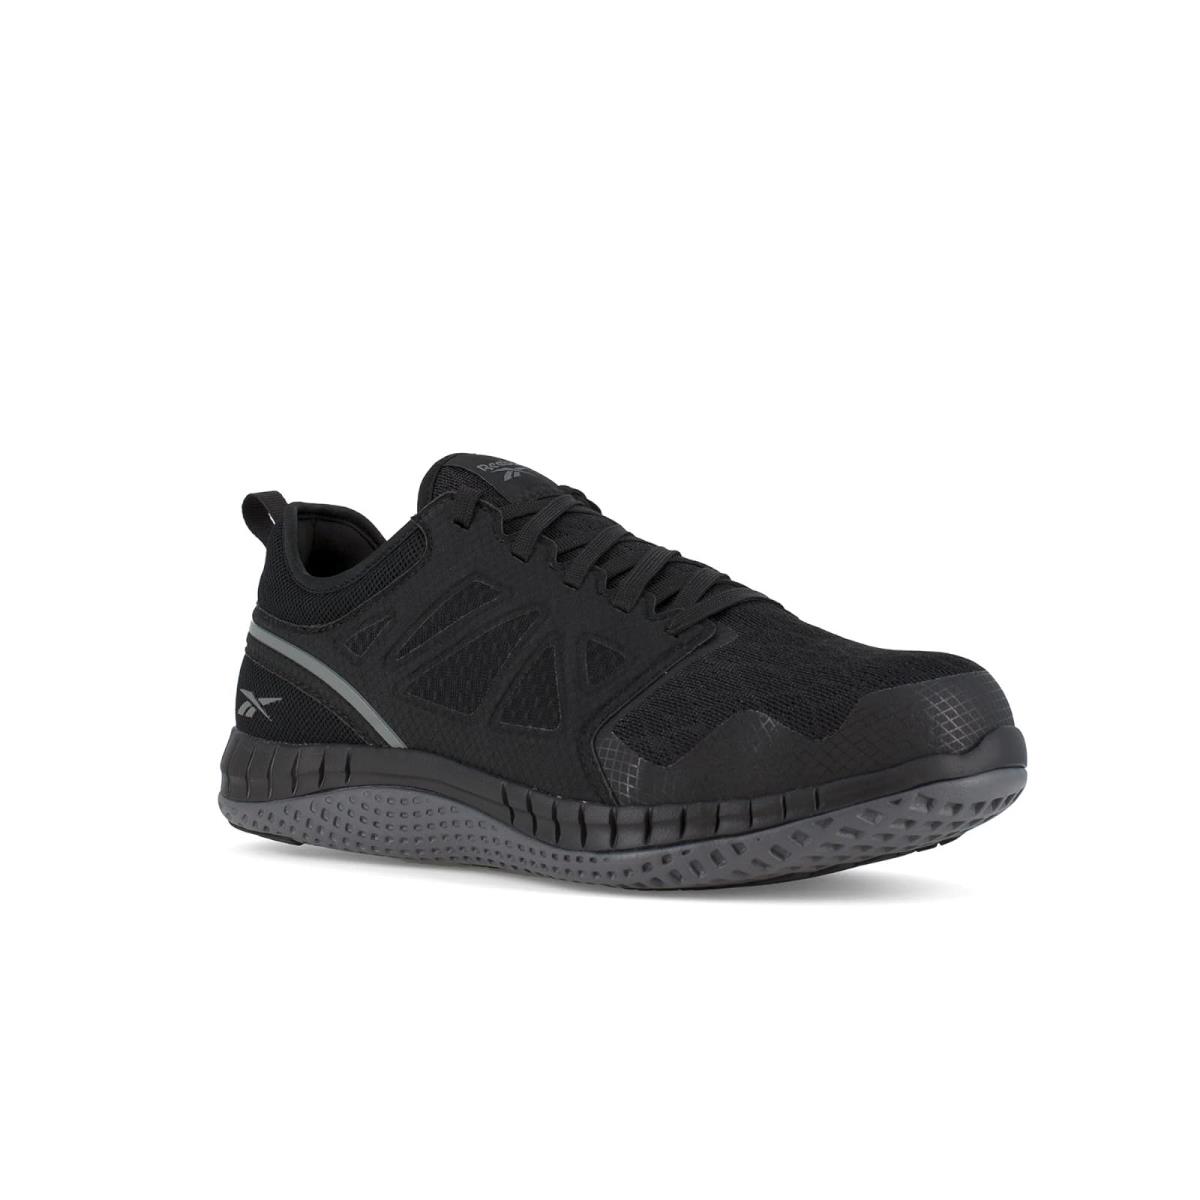 Man`s Sneakers Athletic Shoes Reebok Work Zprint Work Black/Dark Grey